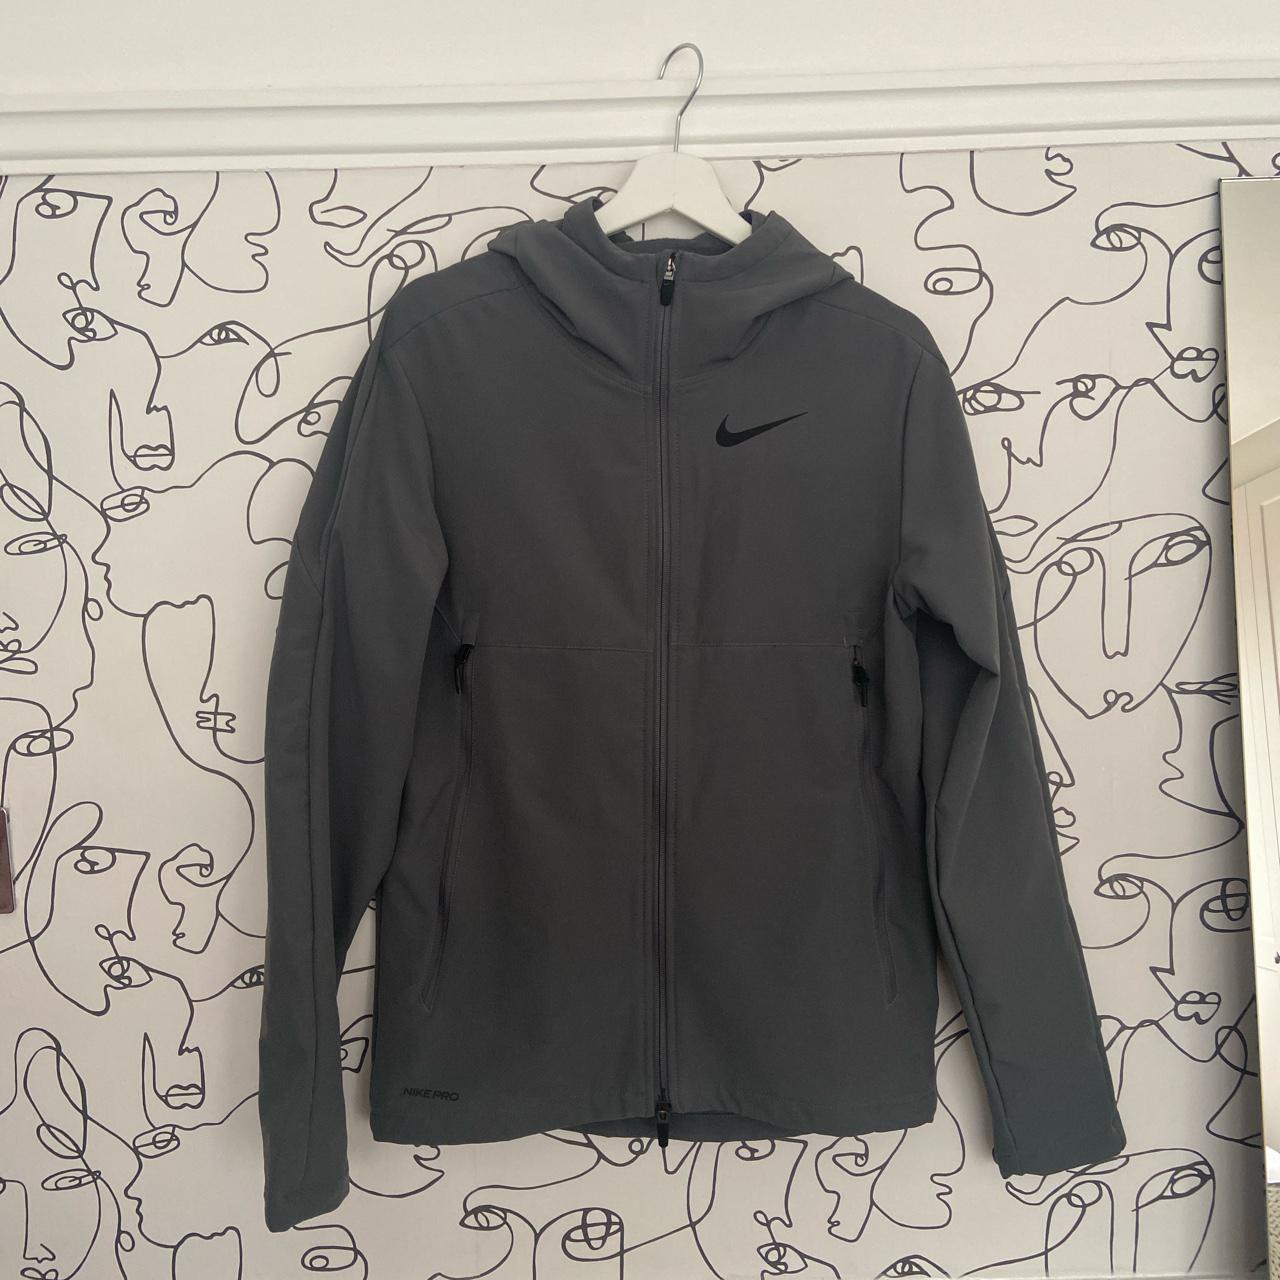 Men’s Nike Winterized Woven Training Jacket in grey.... - Depop